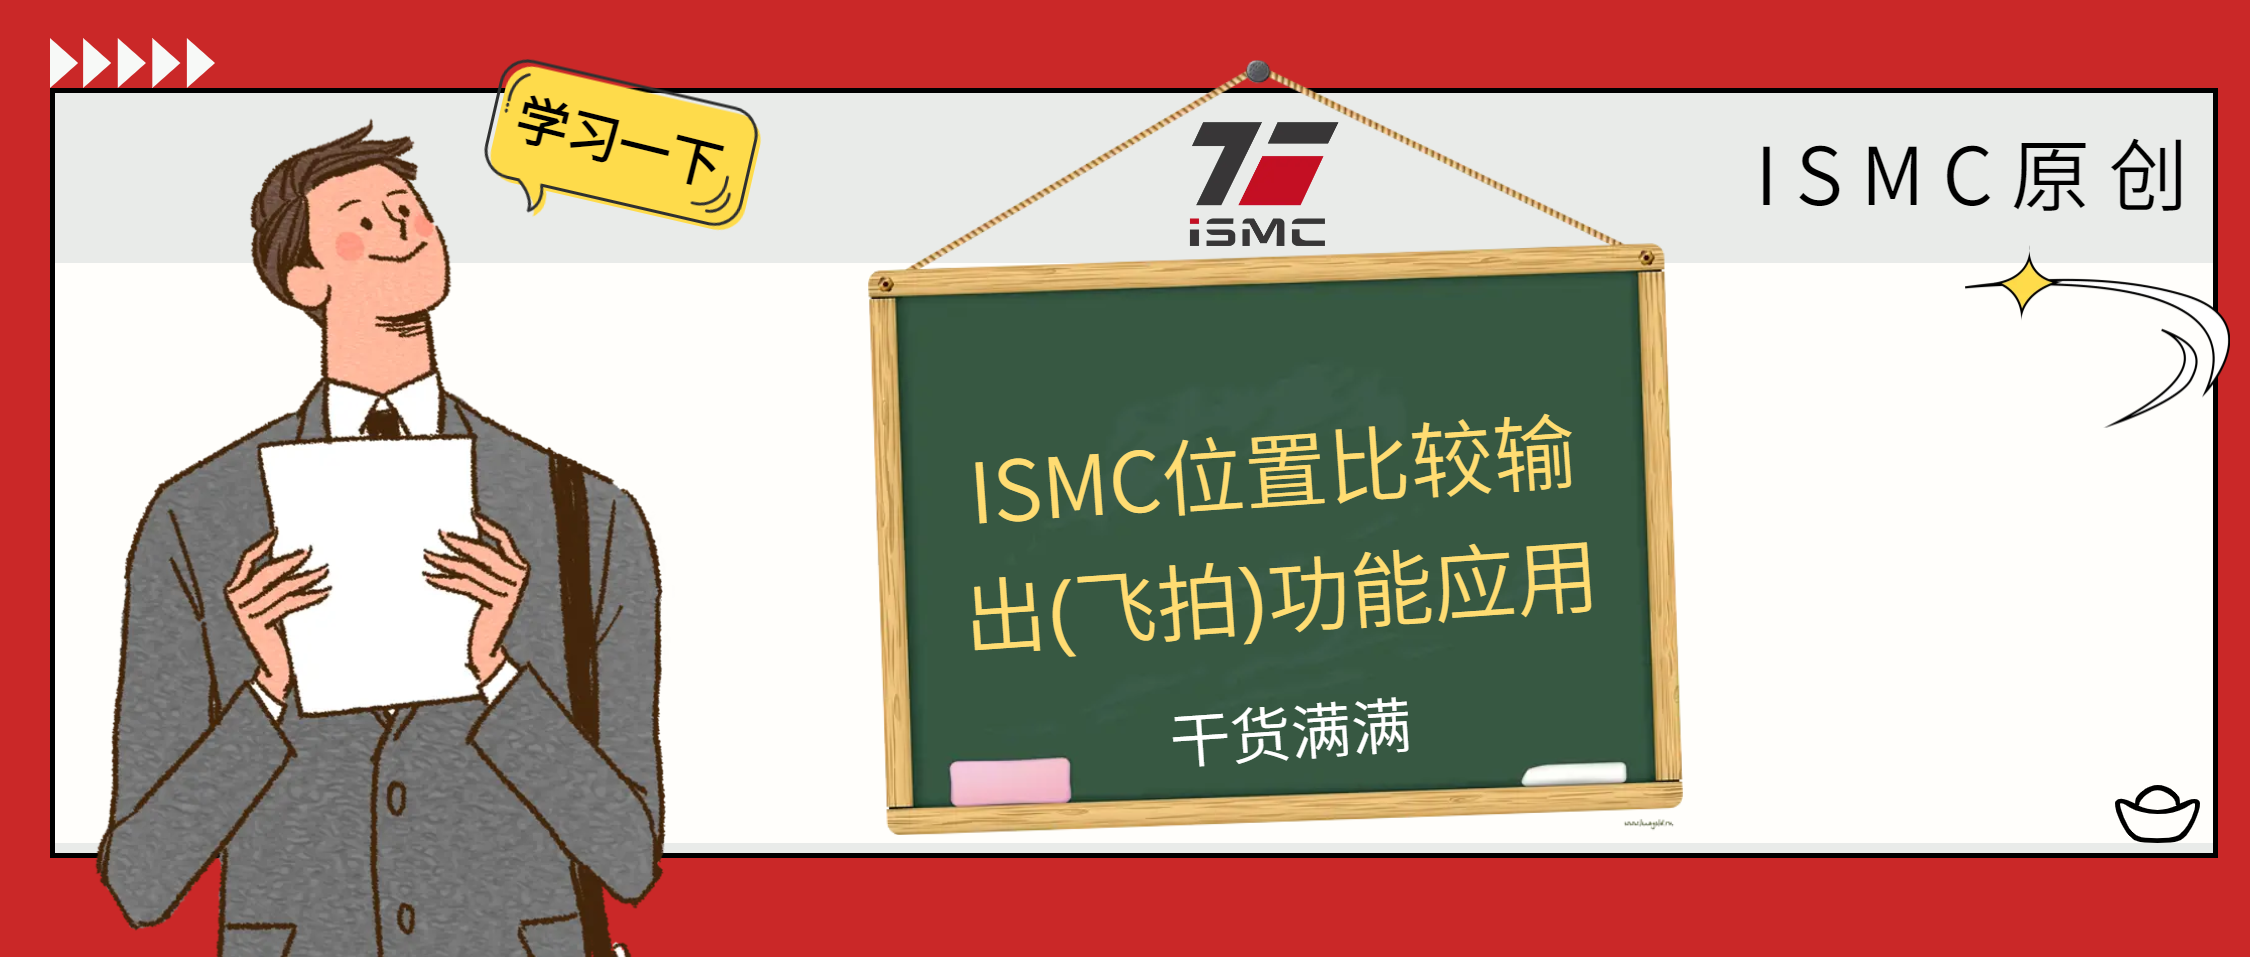 【干货】ISMC位置比较输出(飞拍)功能应用